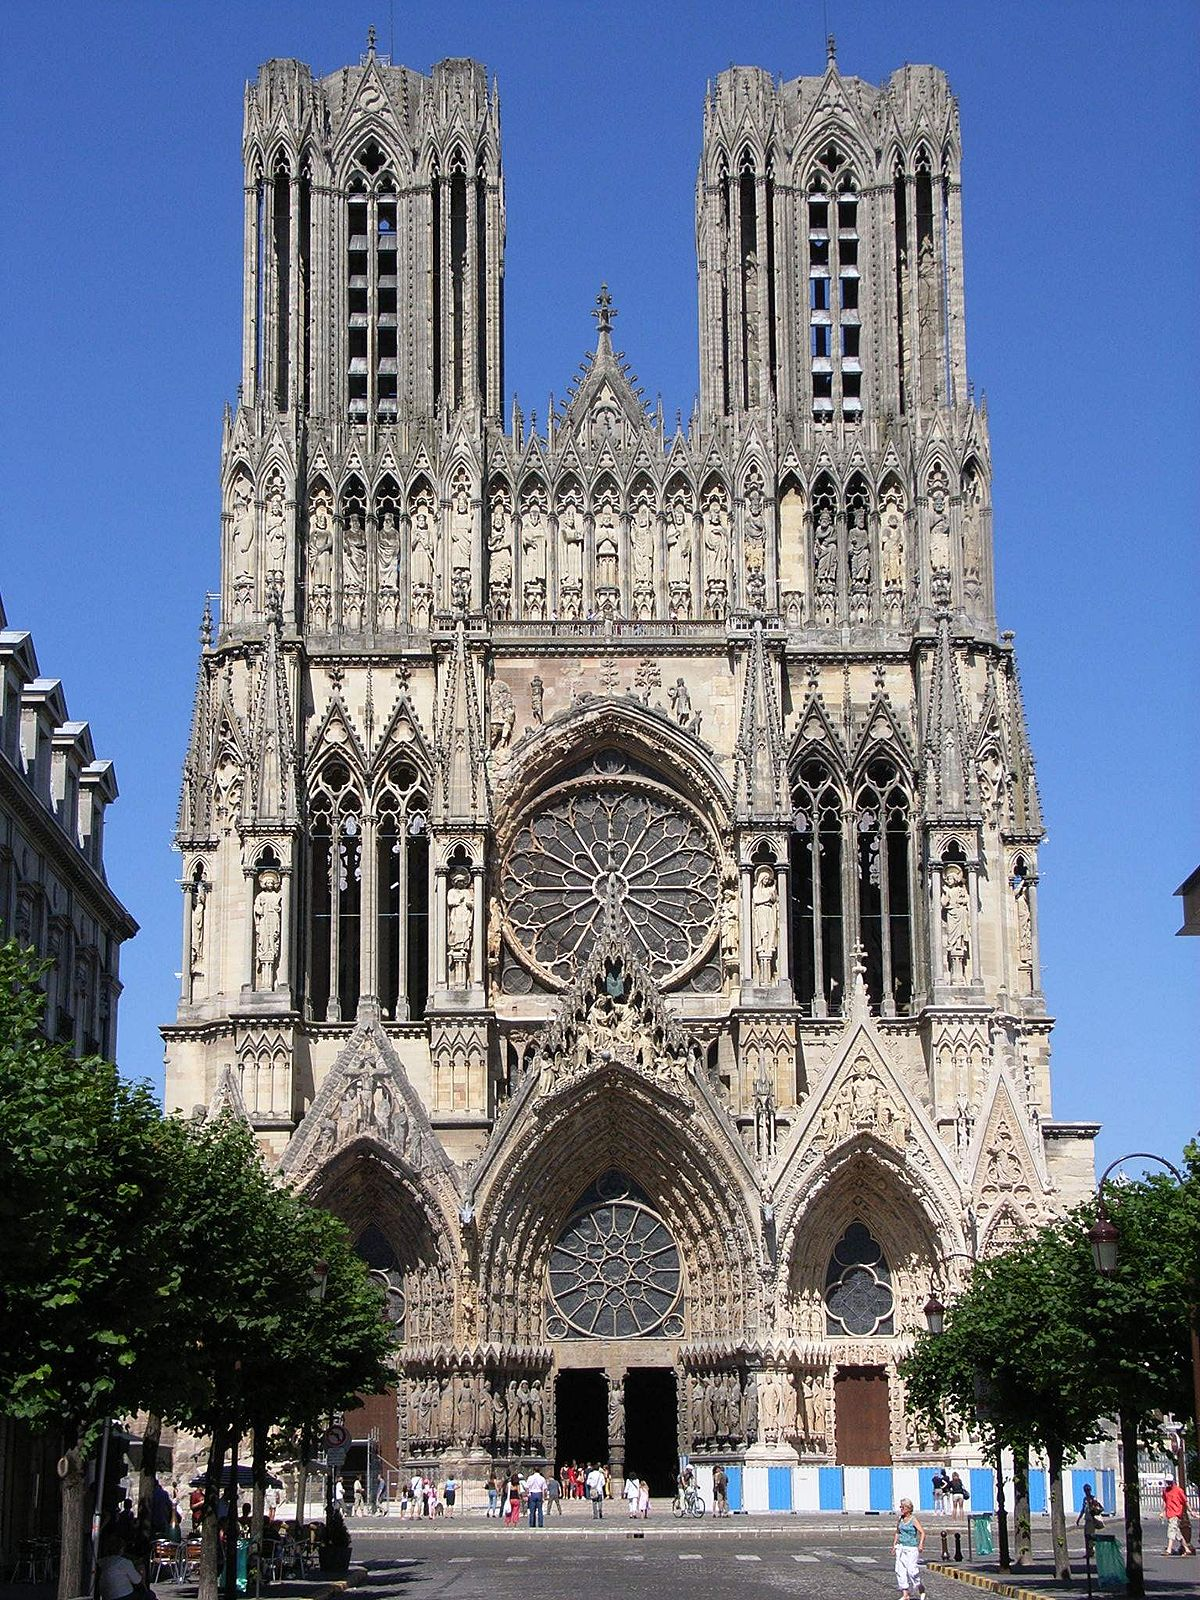 Mặt chính của tòa nhà Đức bà Reims theo kiến trúc Gothic